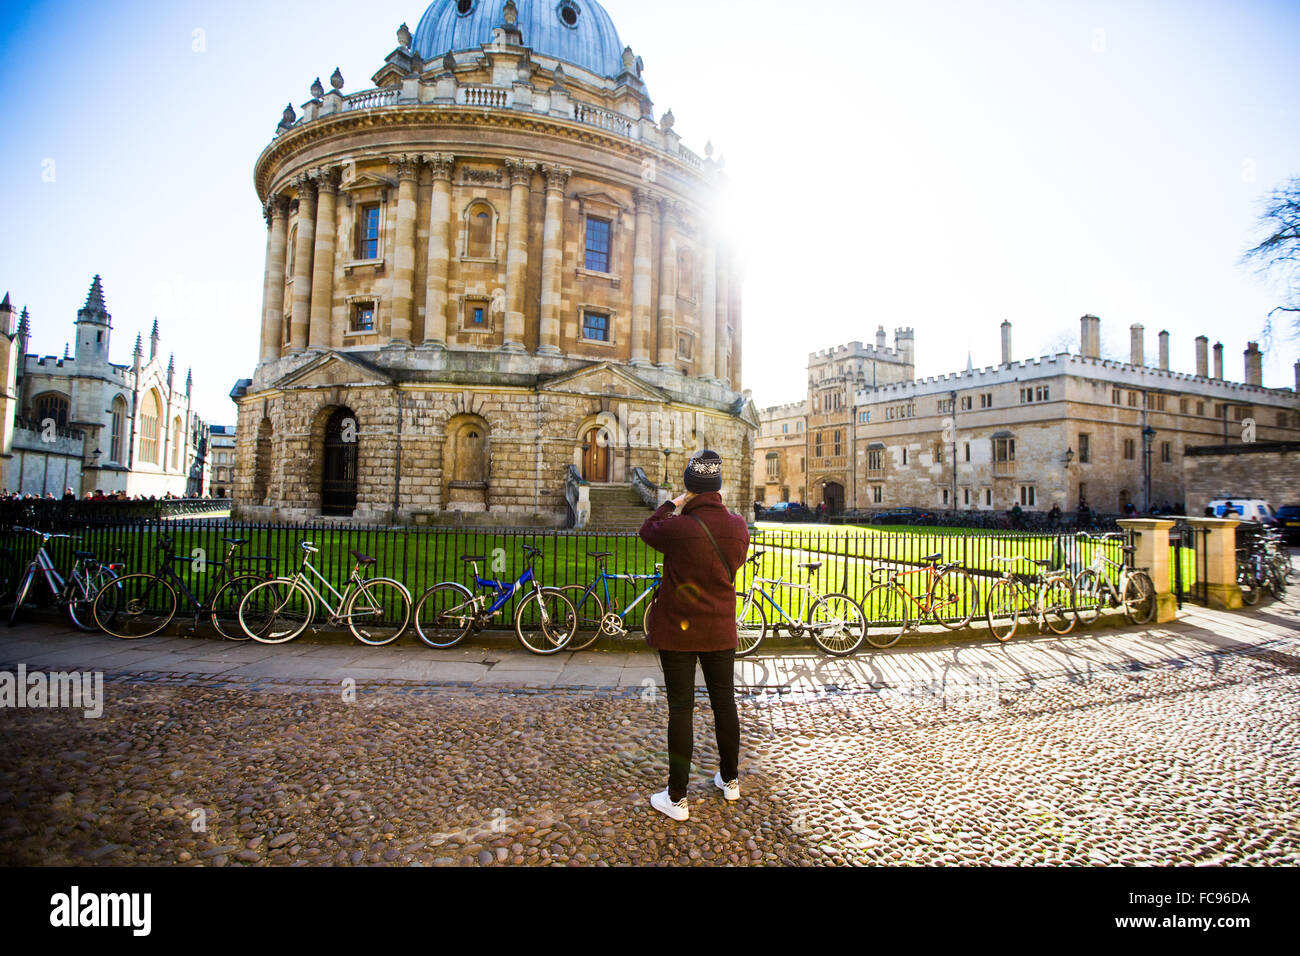 Radcliffe Camera, à partir de l'église Sainte-Marie, Oxford, Oxfordshire, Angleterre, Royaume-Uni, Europe Banque D'Images